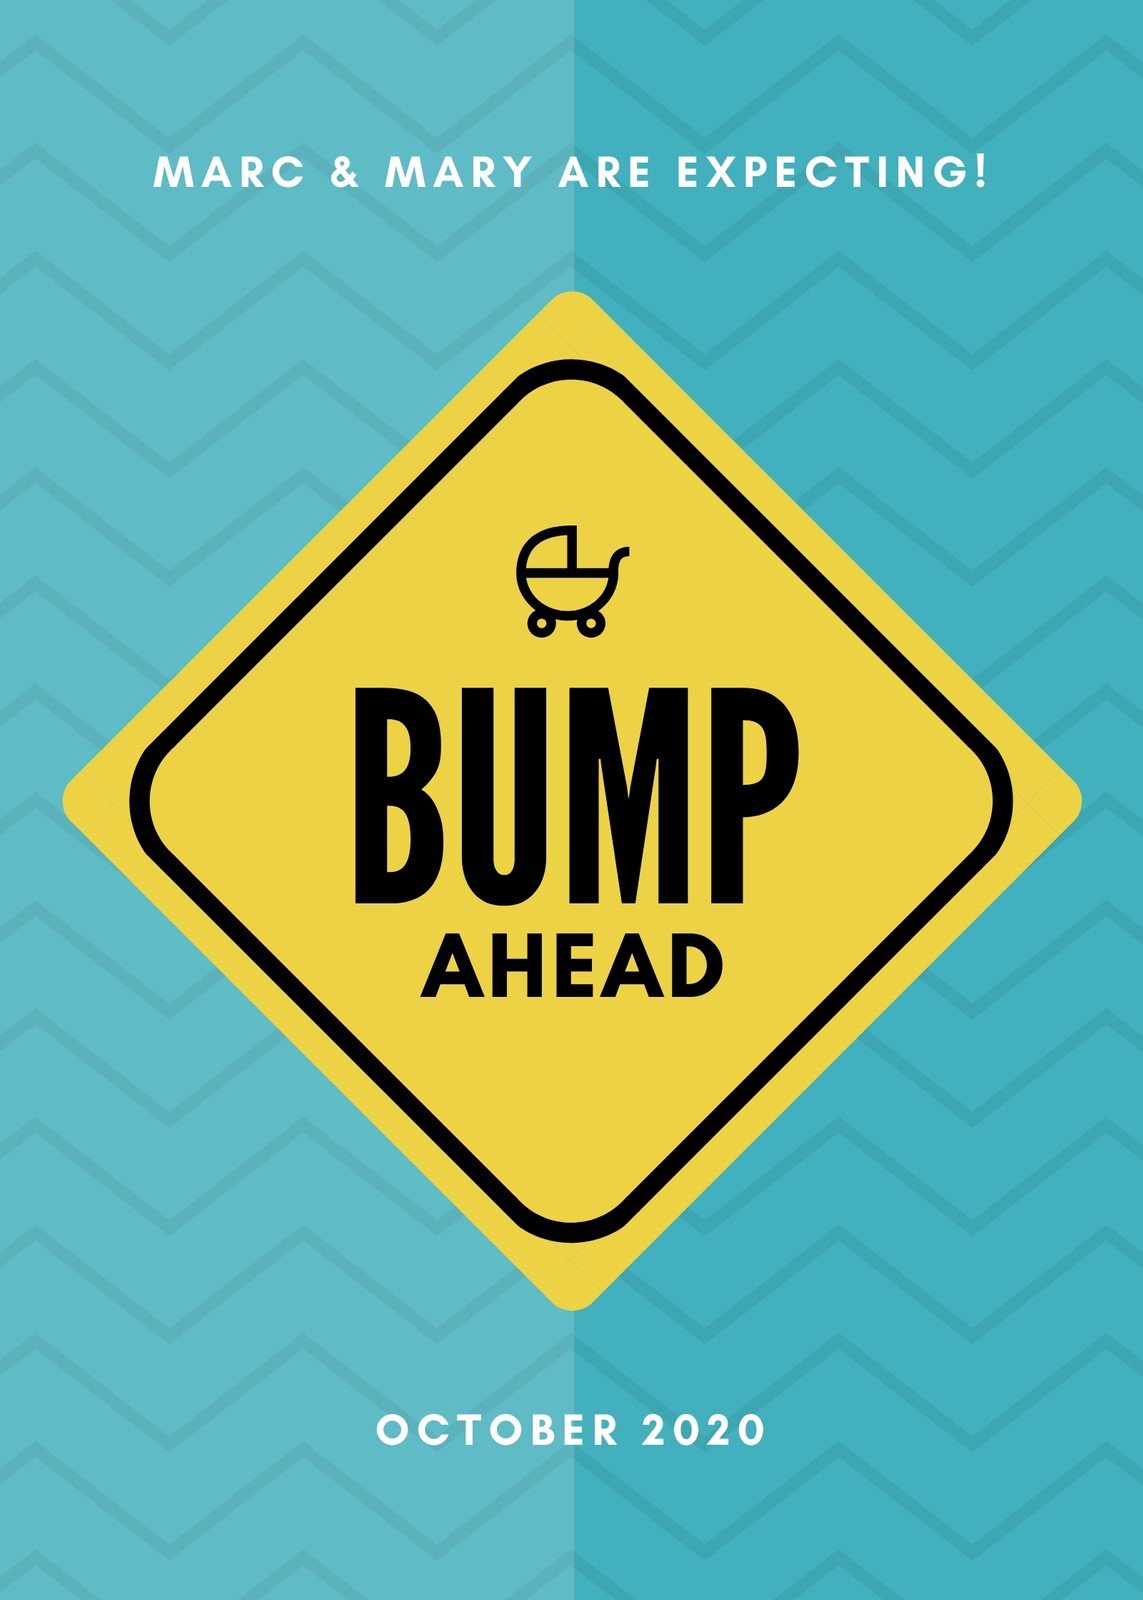 bump ahead sign pregnancy announcement